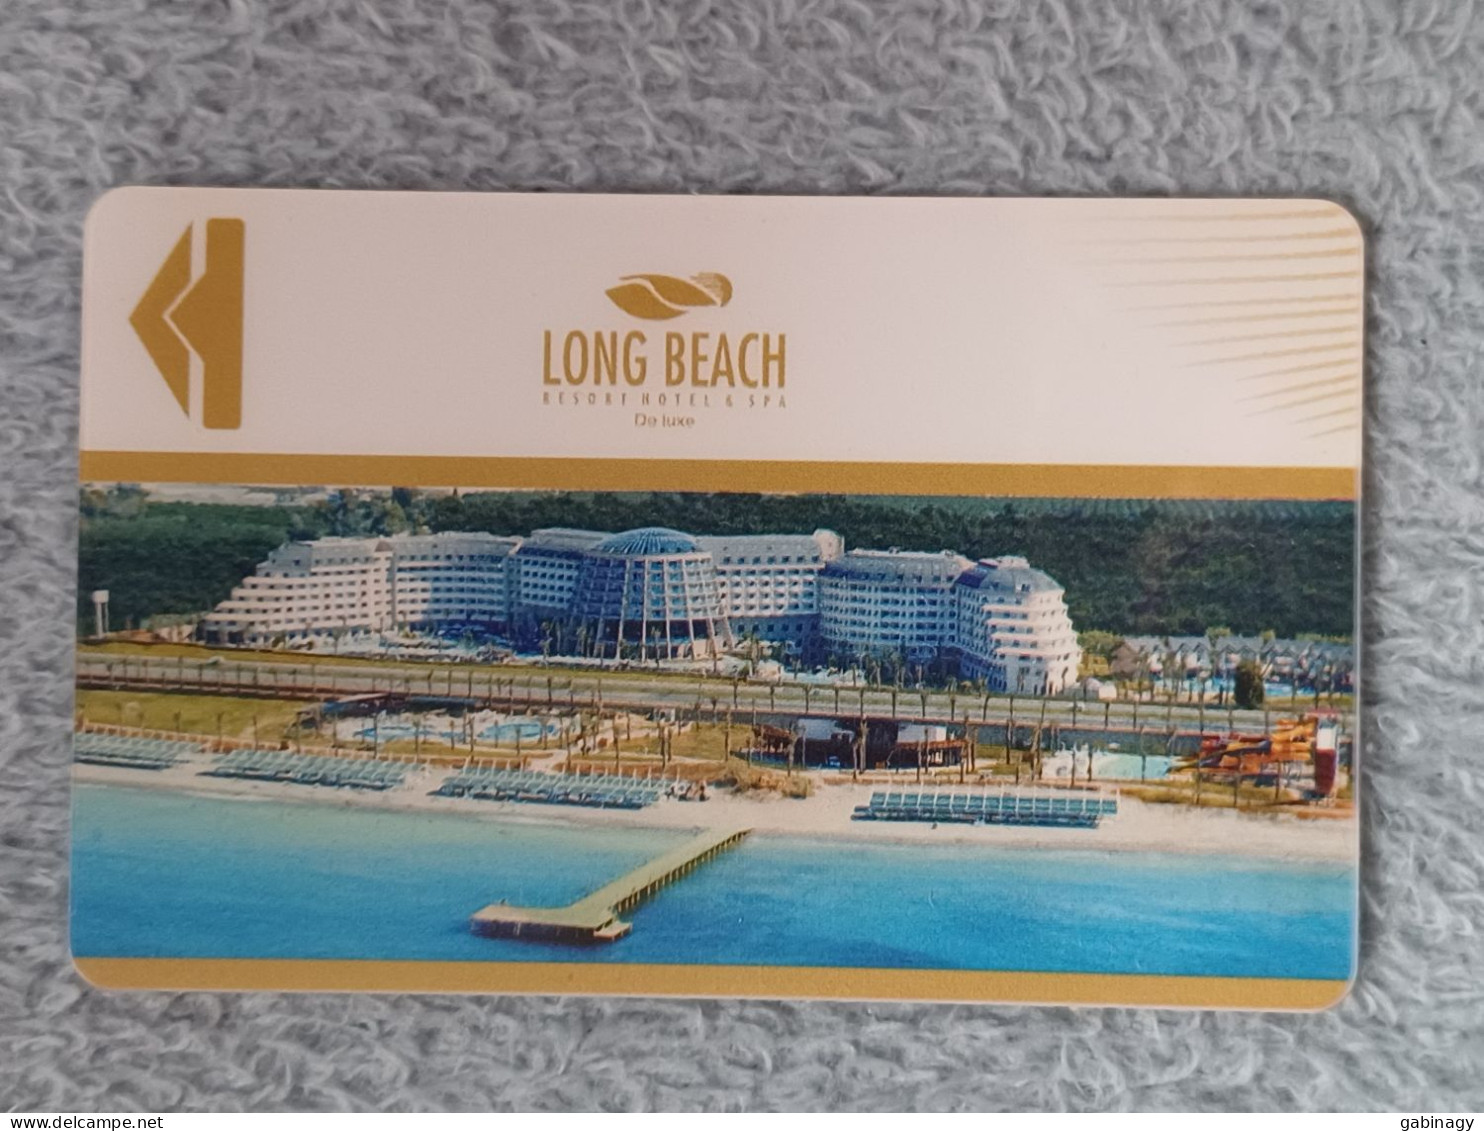 HOTEL KEYS - 2566 - TURKEY - LONG BEACH - Hotelkarten